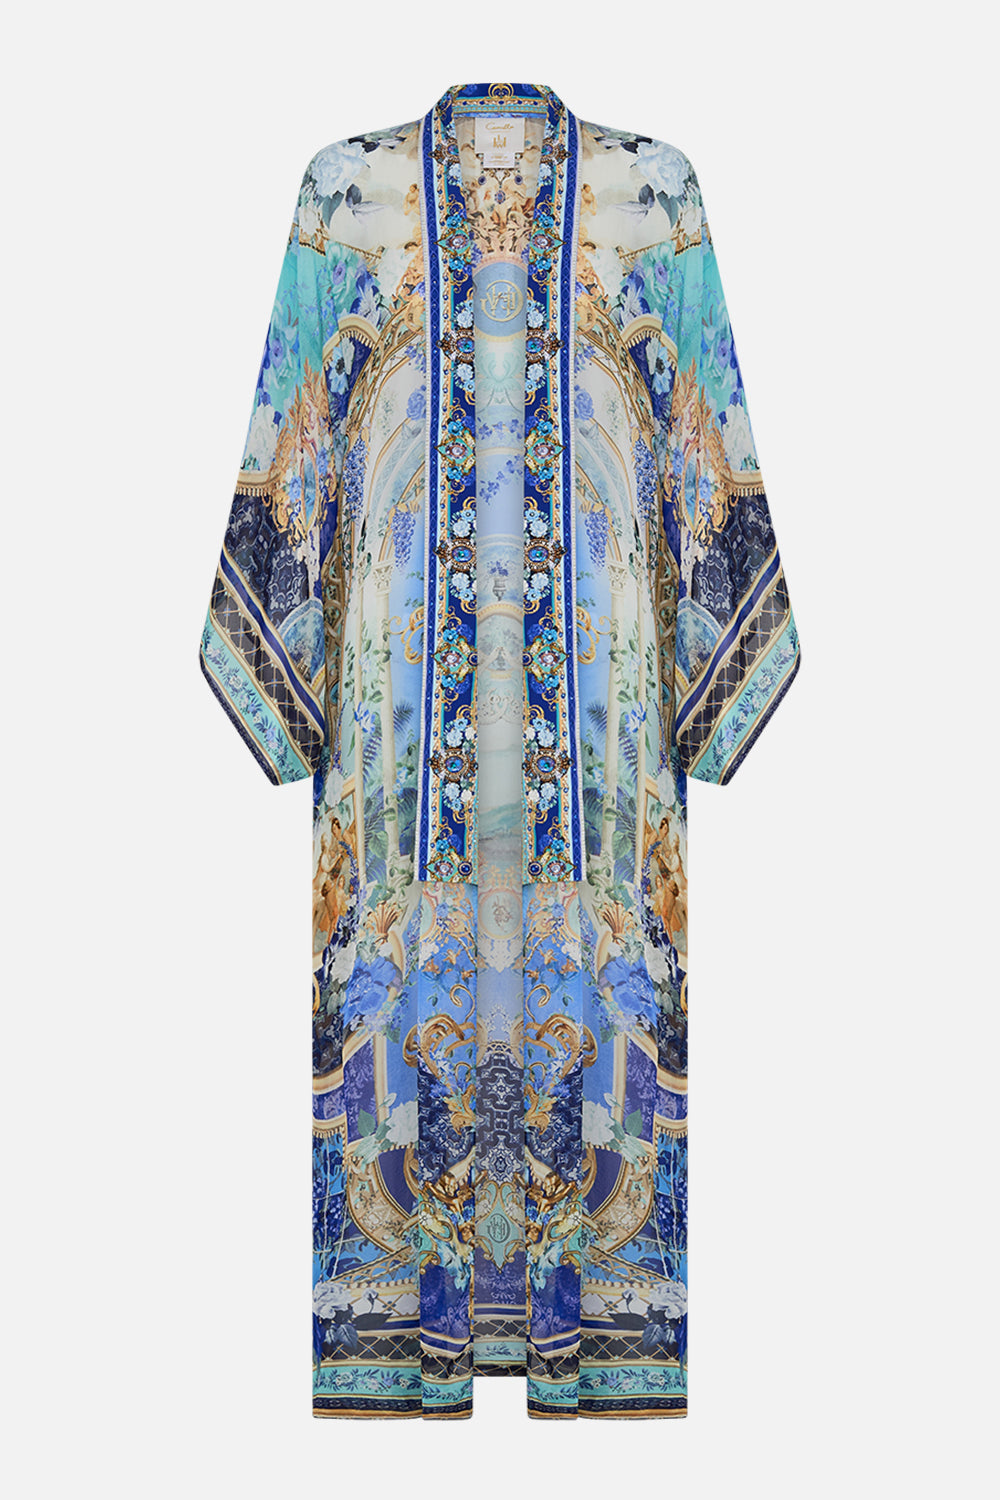 CAMILLA kimono layer with collar in Views of Vesuvius print